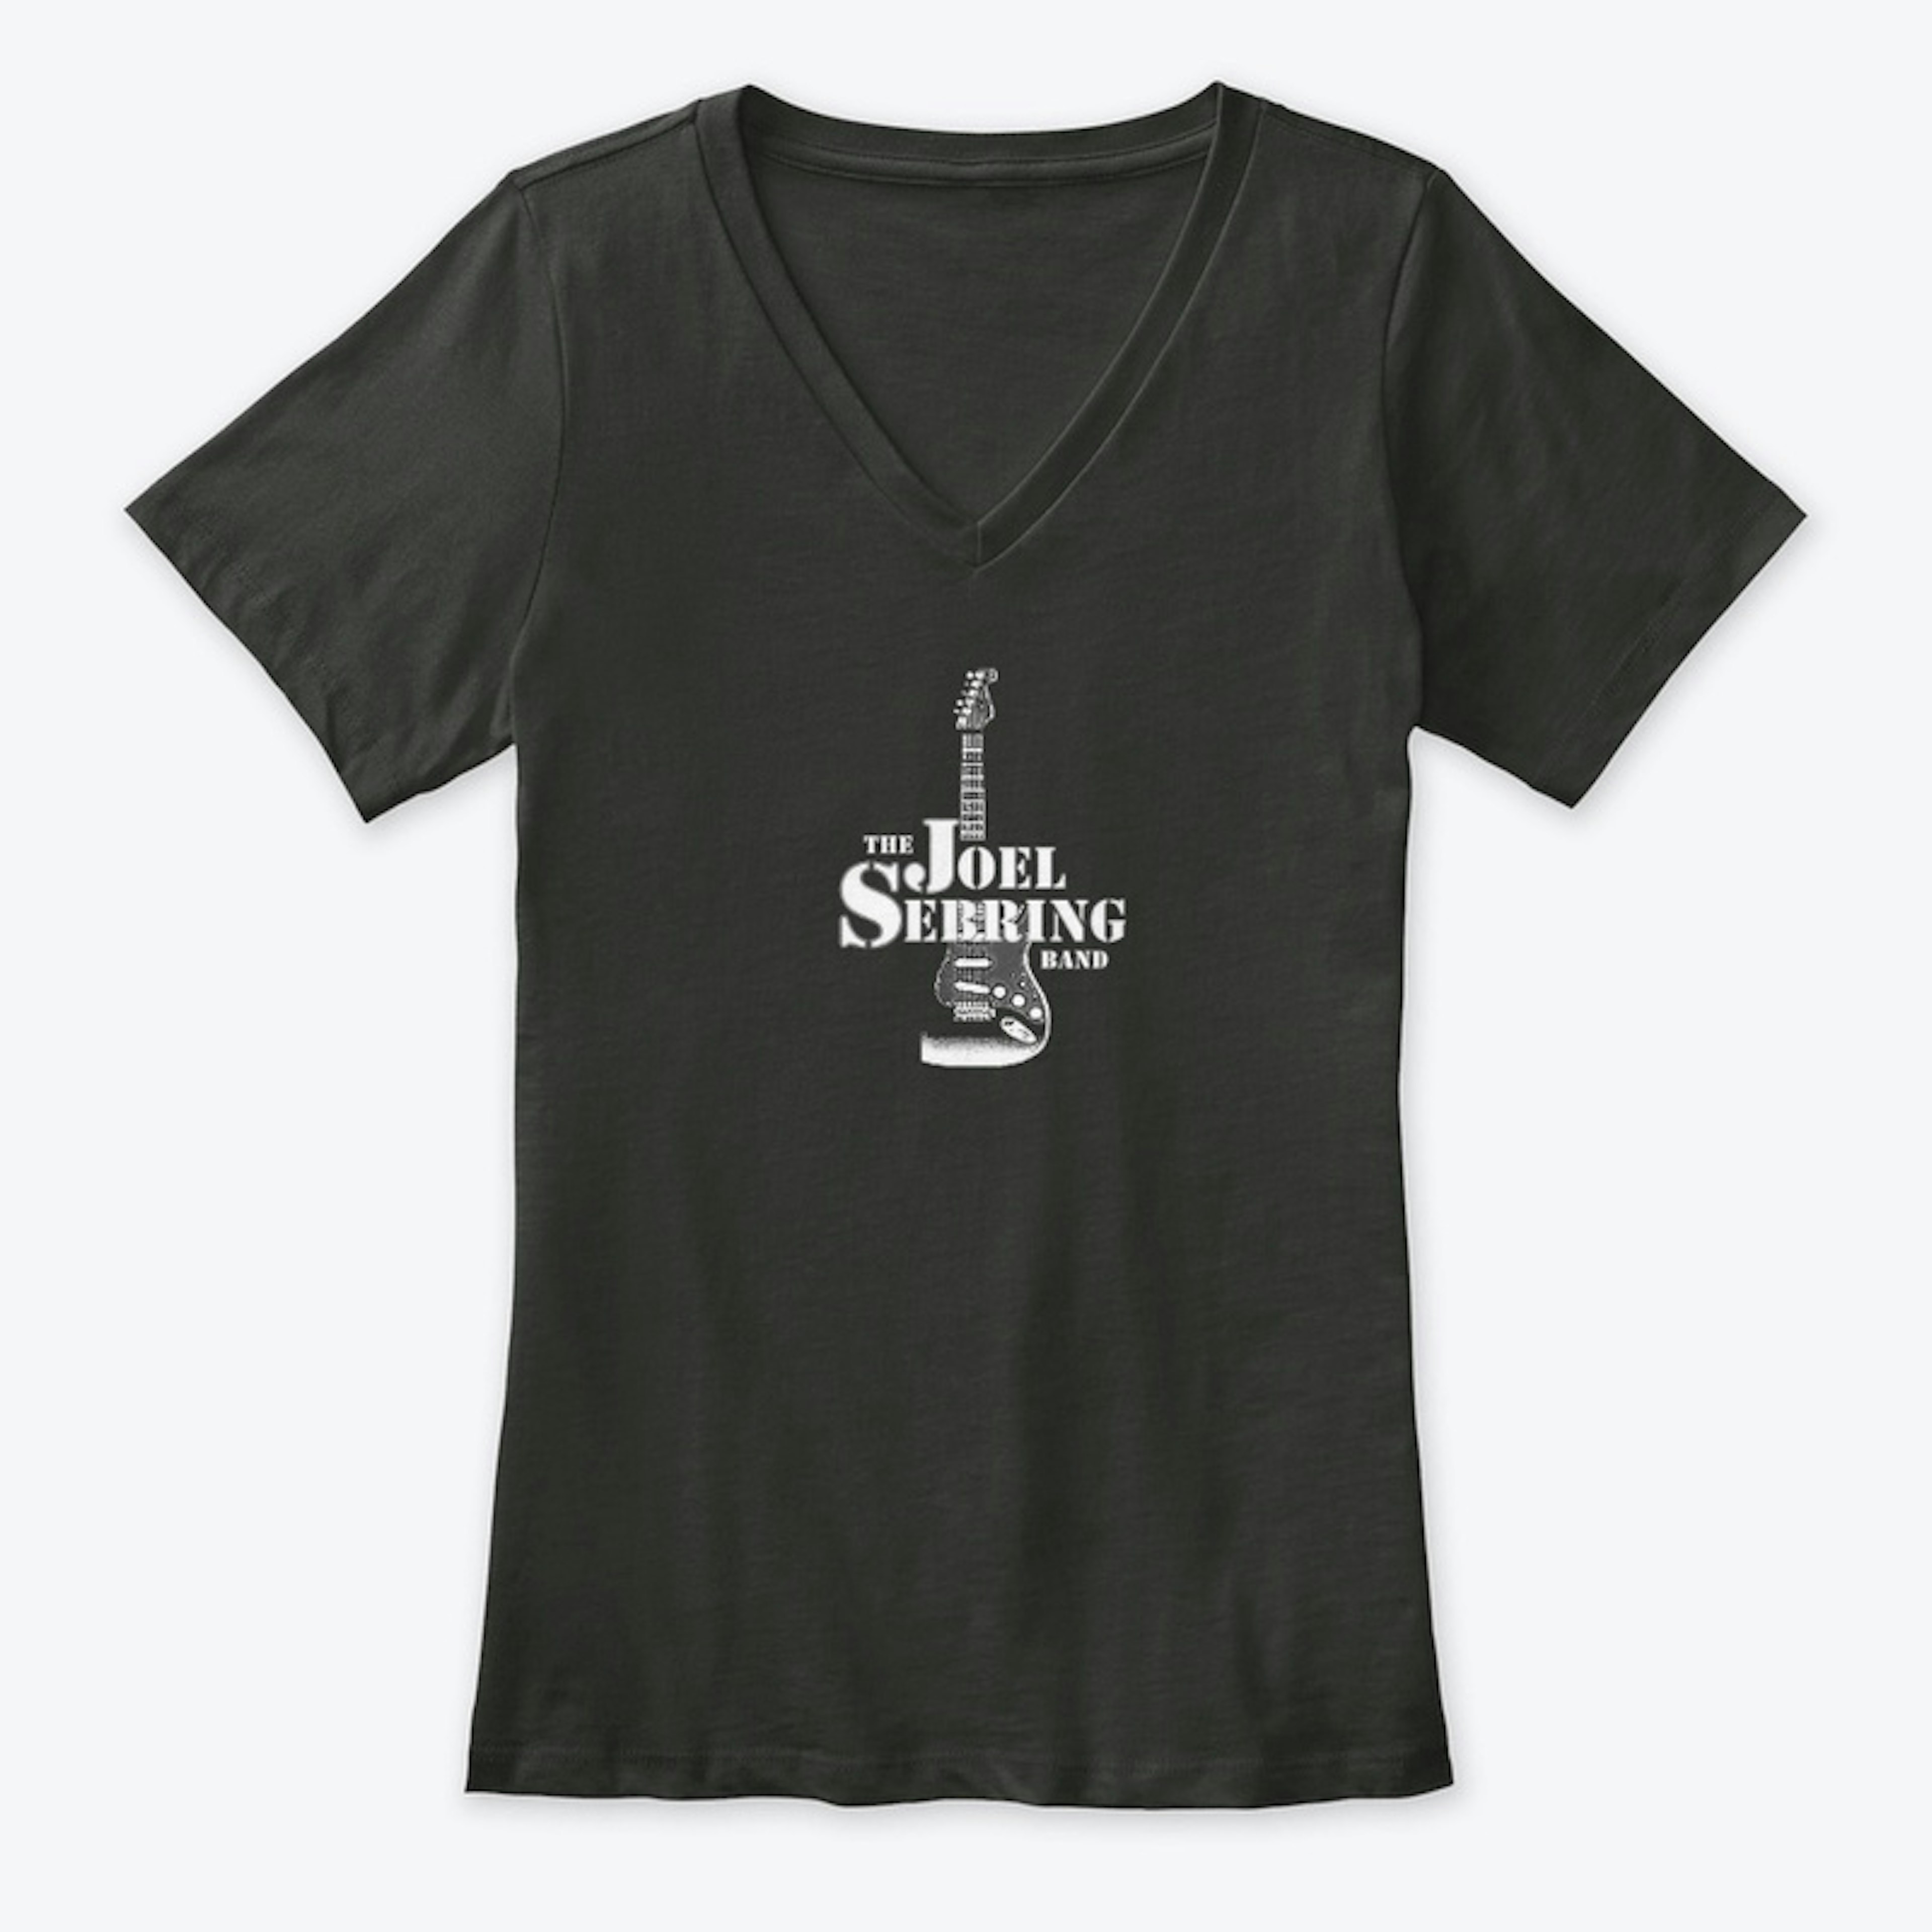 Joel Sebring T-shirts and more